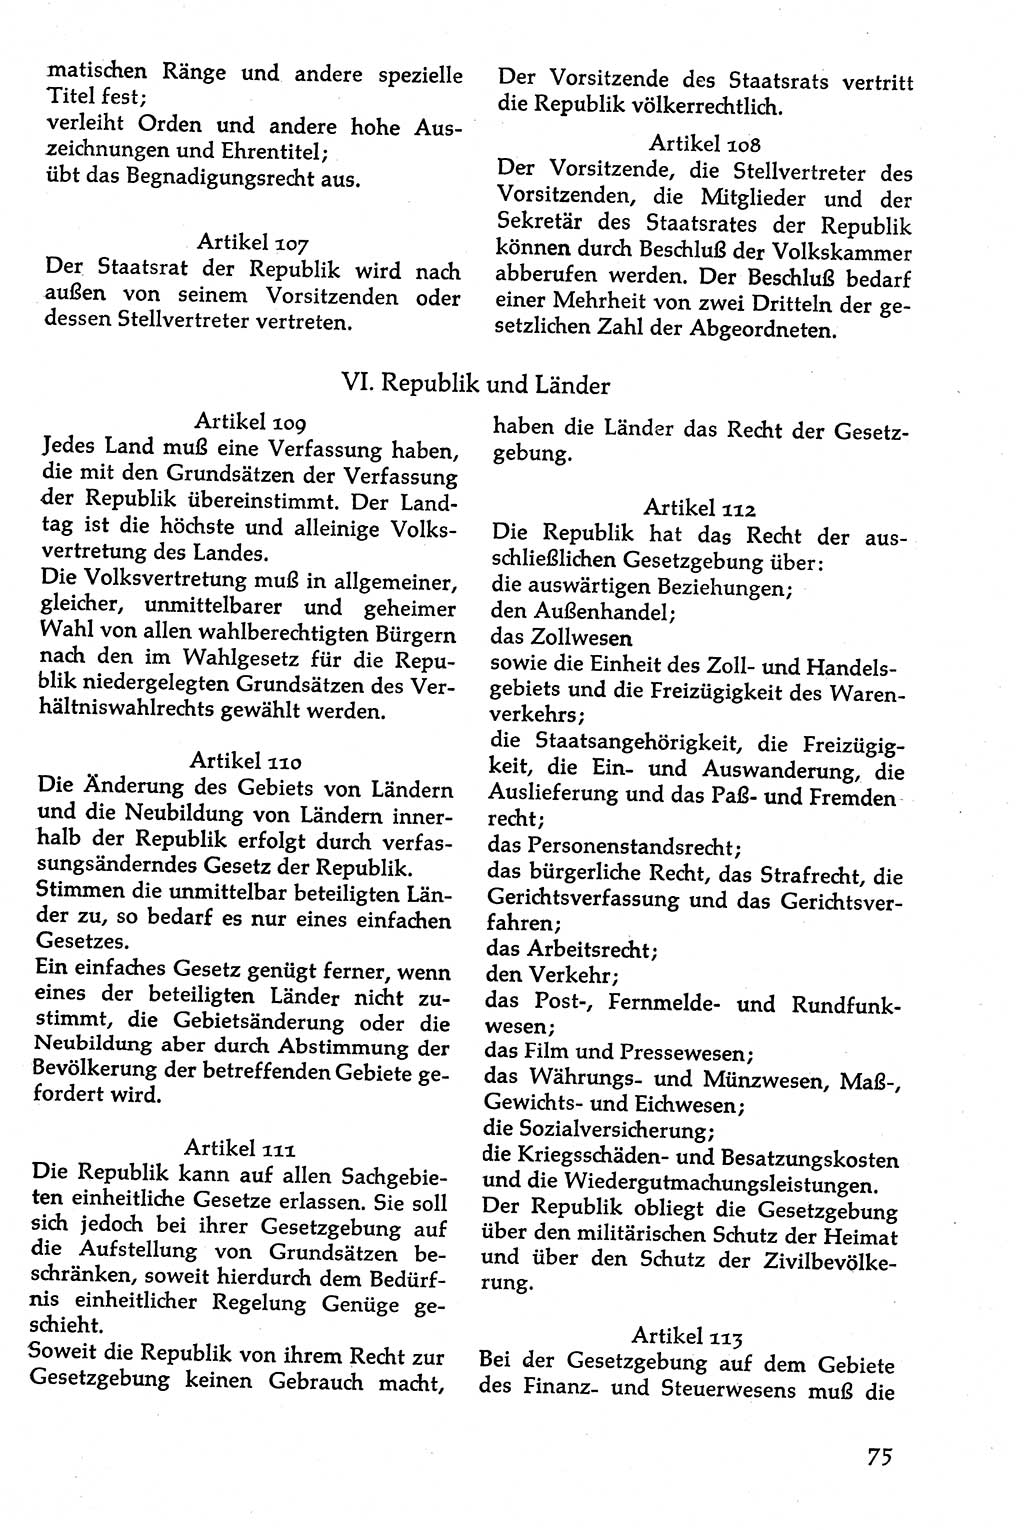 Volksdemokratische Ordnung in Mitteldeutschland [Deutsche Demokratische Republik (DDR)], Texte zur verfassungsrechtlichen Situation 1963, Seite 75 (Volksdem. Ordn. Md. DDR 1963, S. 75)